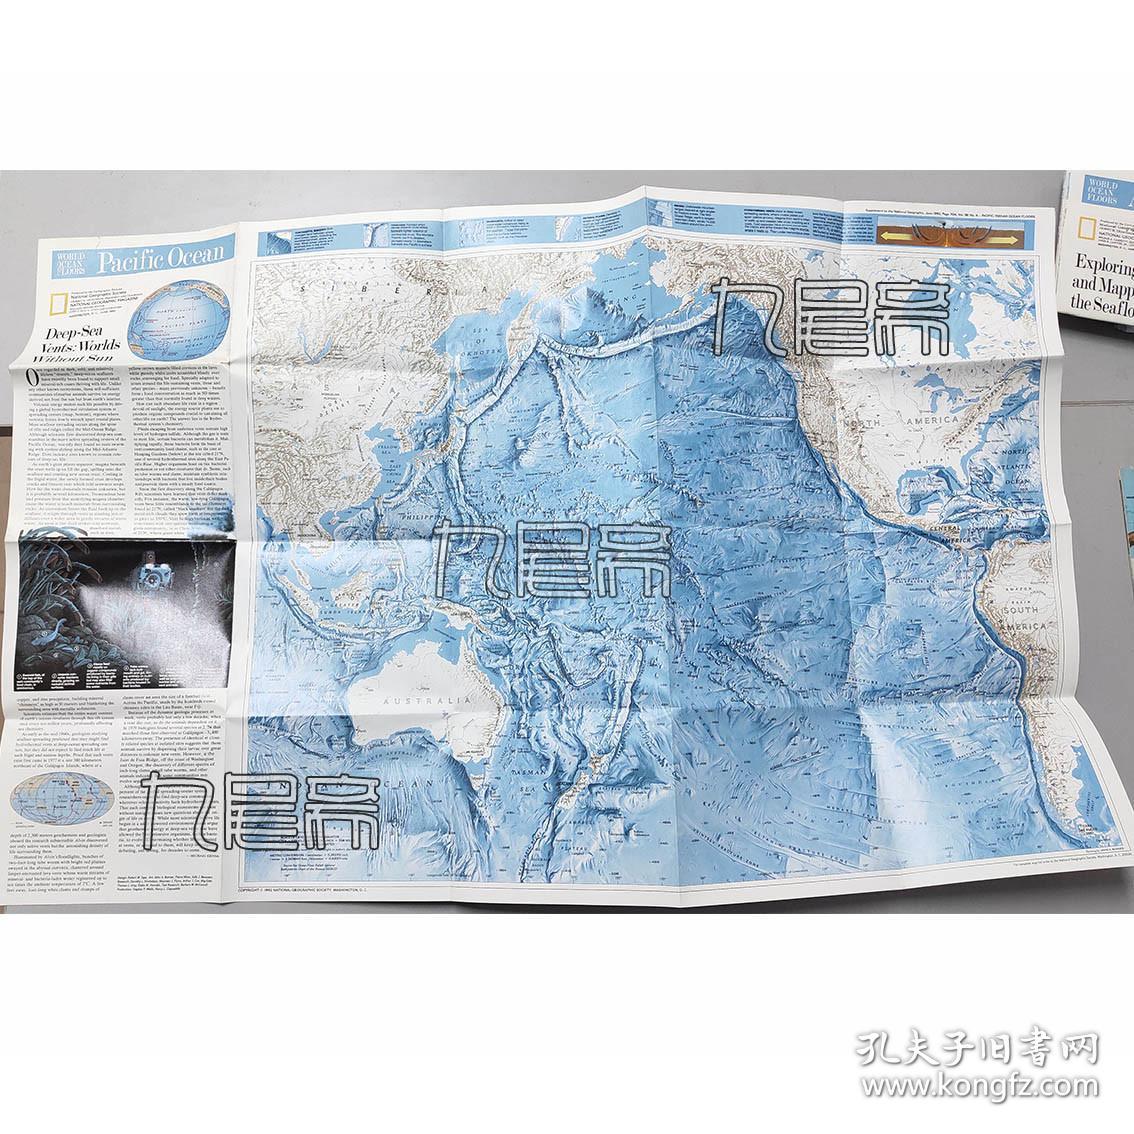 美国国家地理杂志 - 太平洋 / 印度洋 - Indian / Pacific Ocean